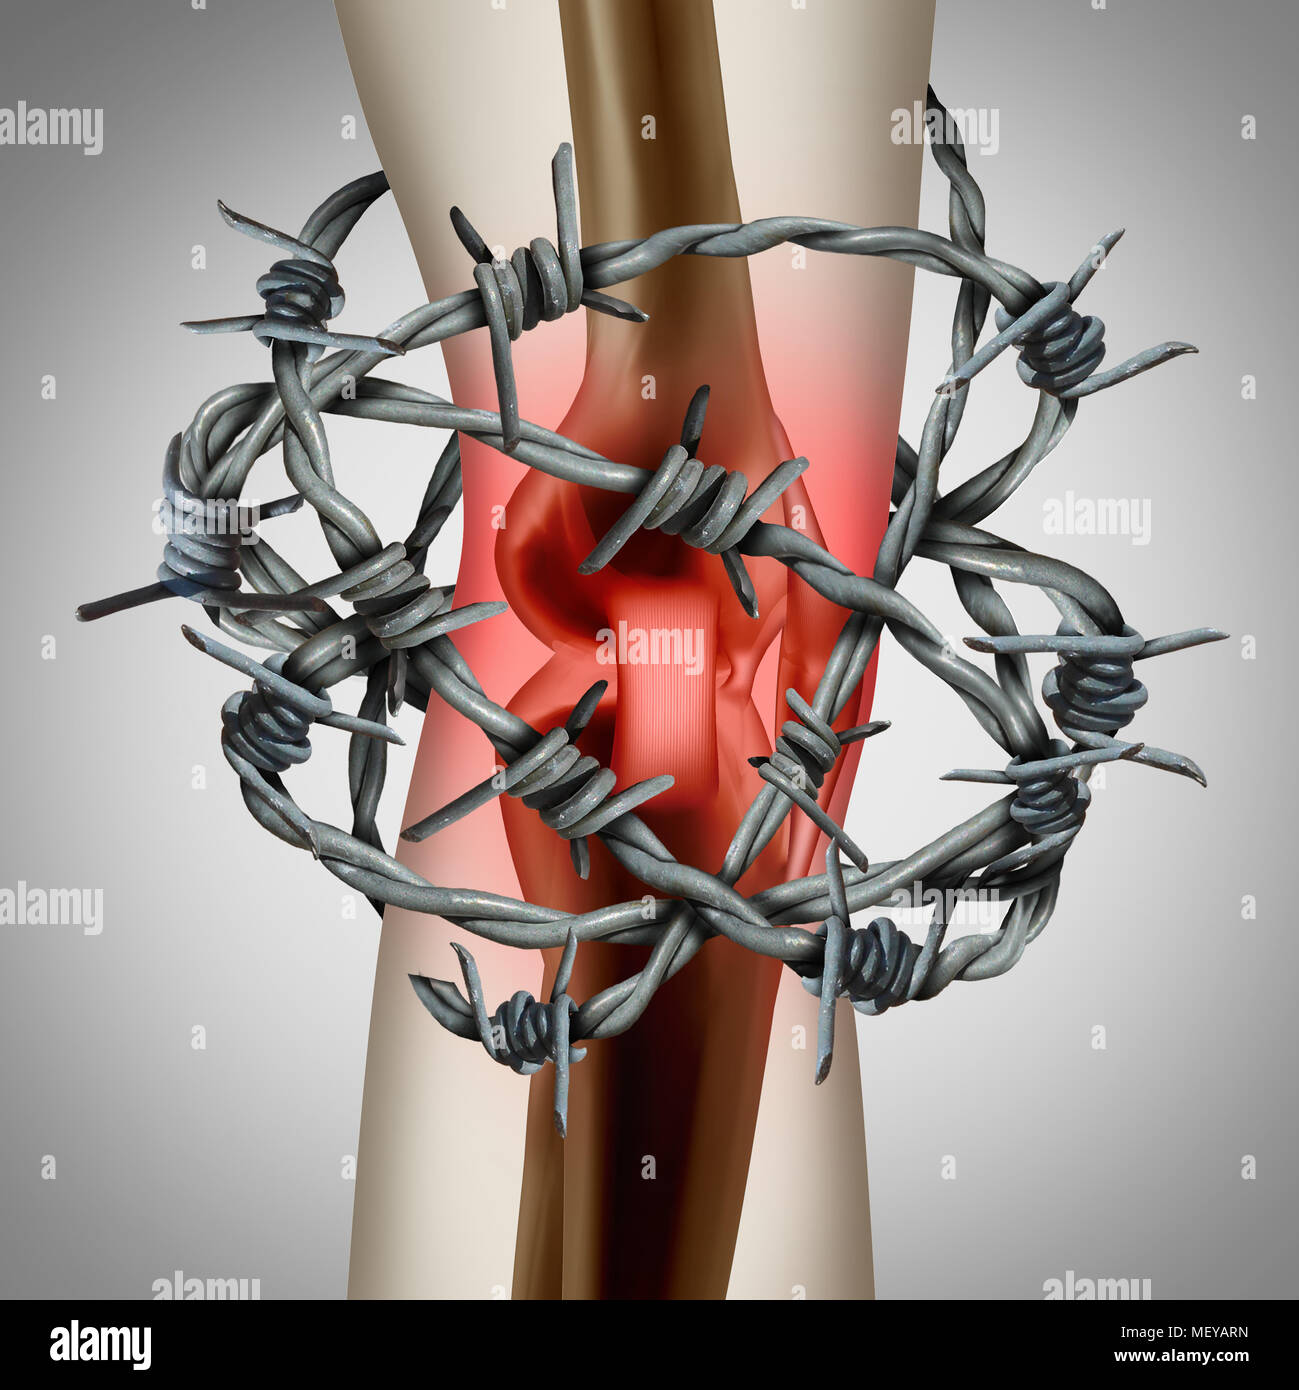 Dolor de rodilla y las articulaciones adoloridas como una ilustración médica de un esqueleto humano, mostrando una lesión deportiva o un accidente físico con alambre de espino. Foto de stock